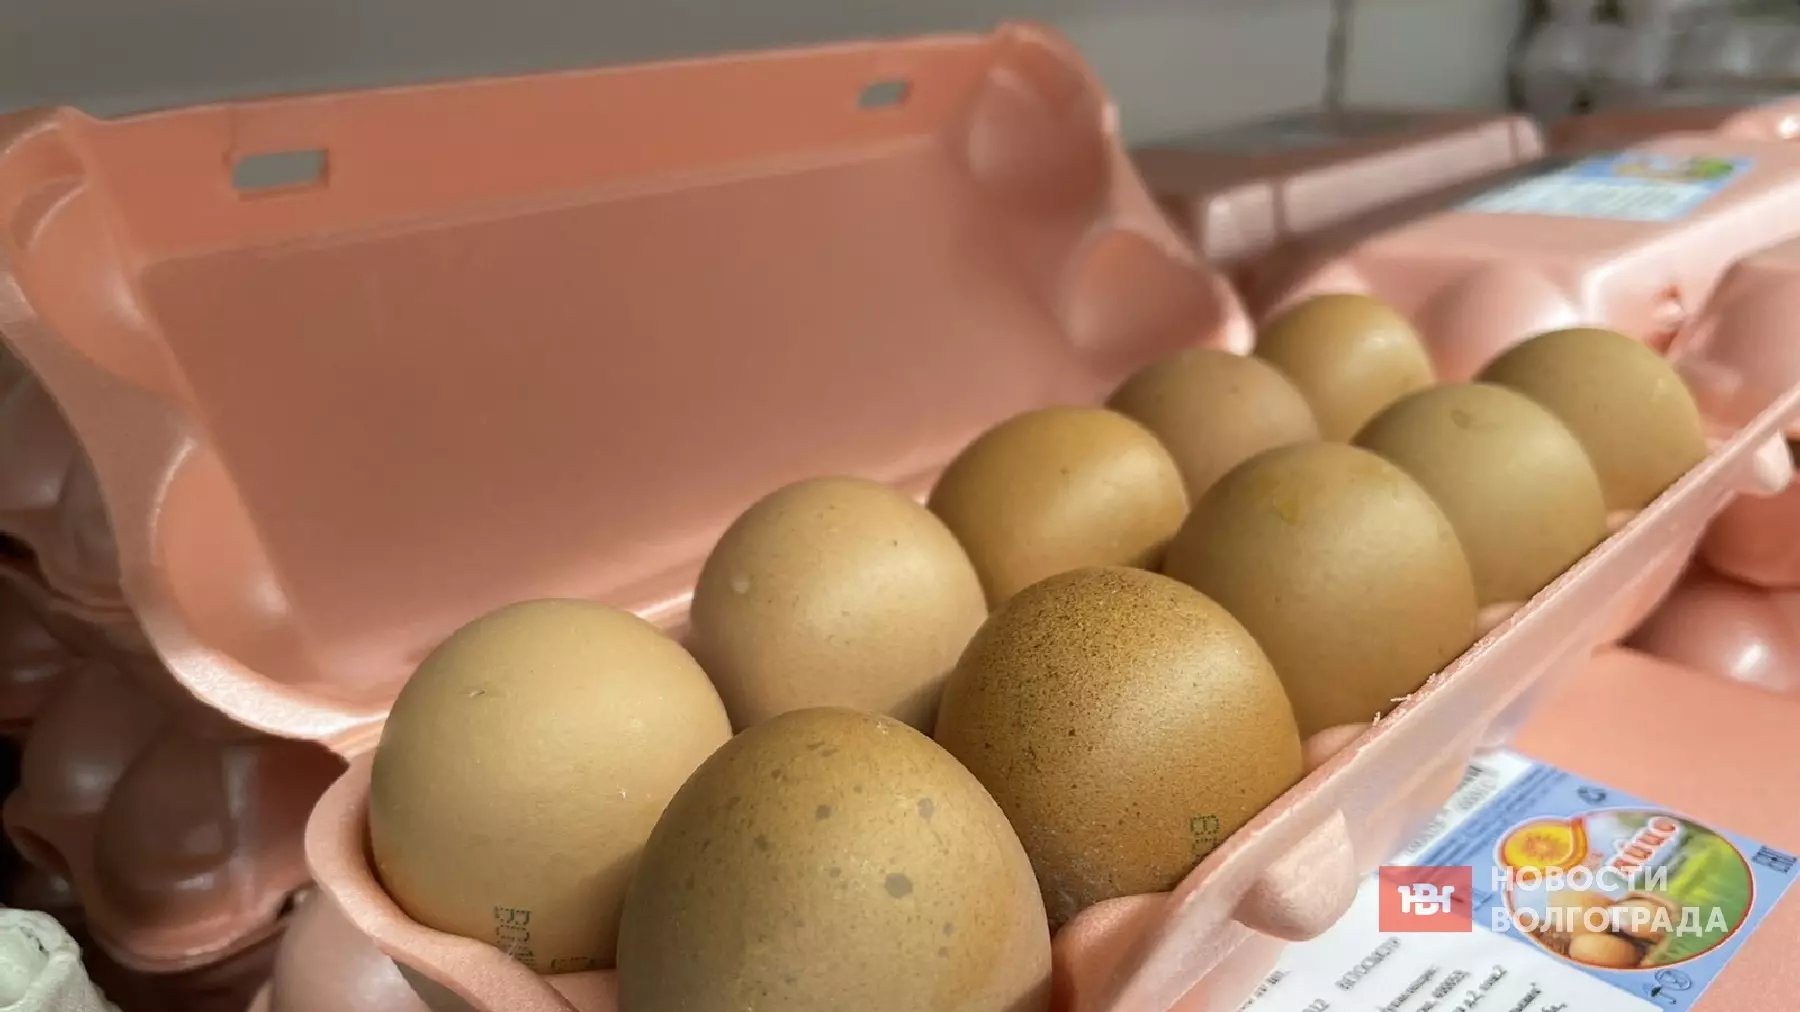 Яйца поставили новый ценовой рекорд в Волгограде